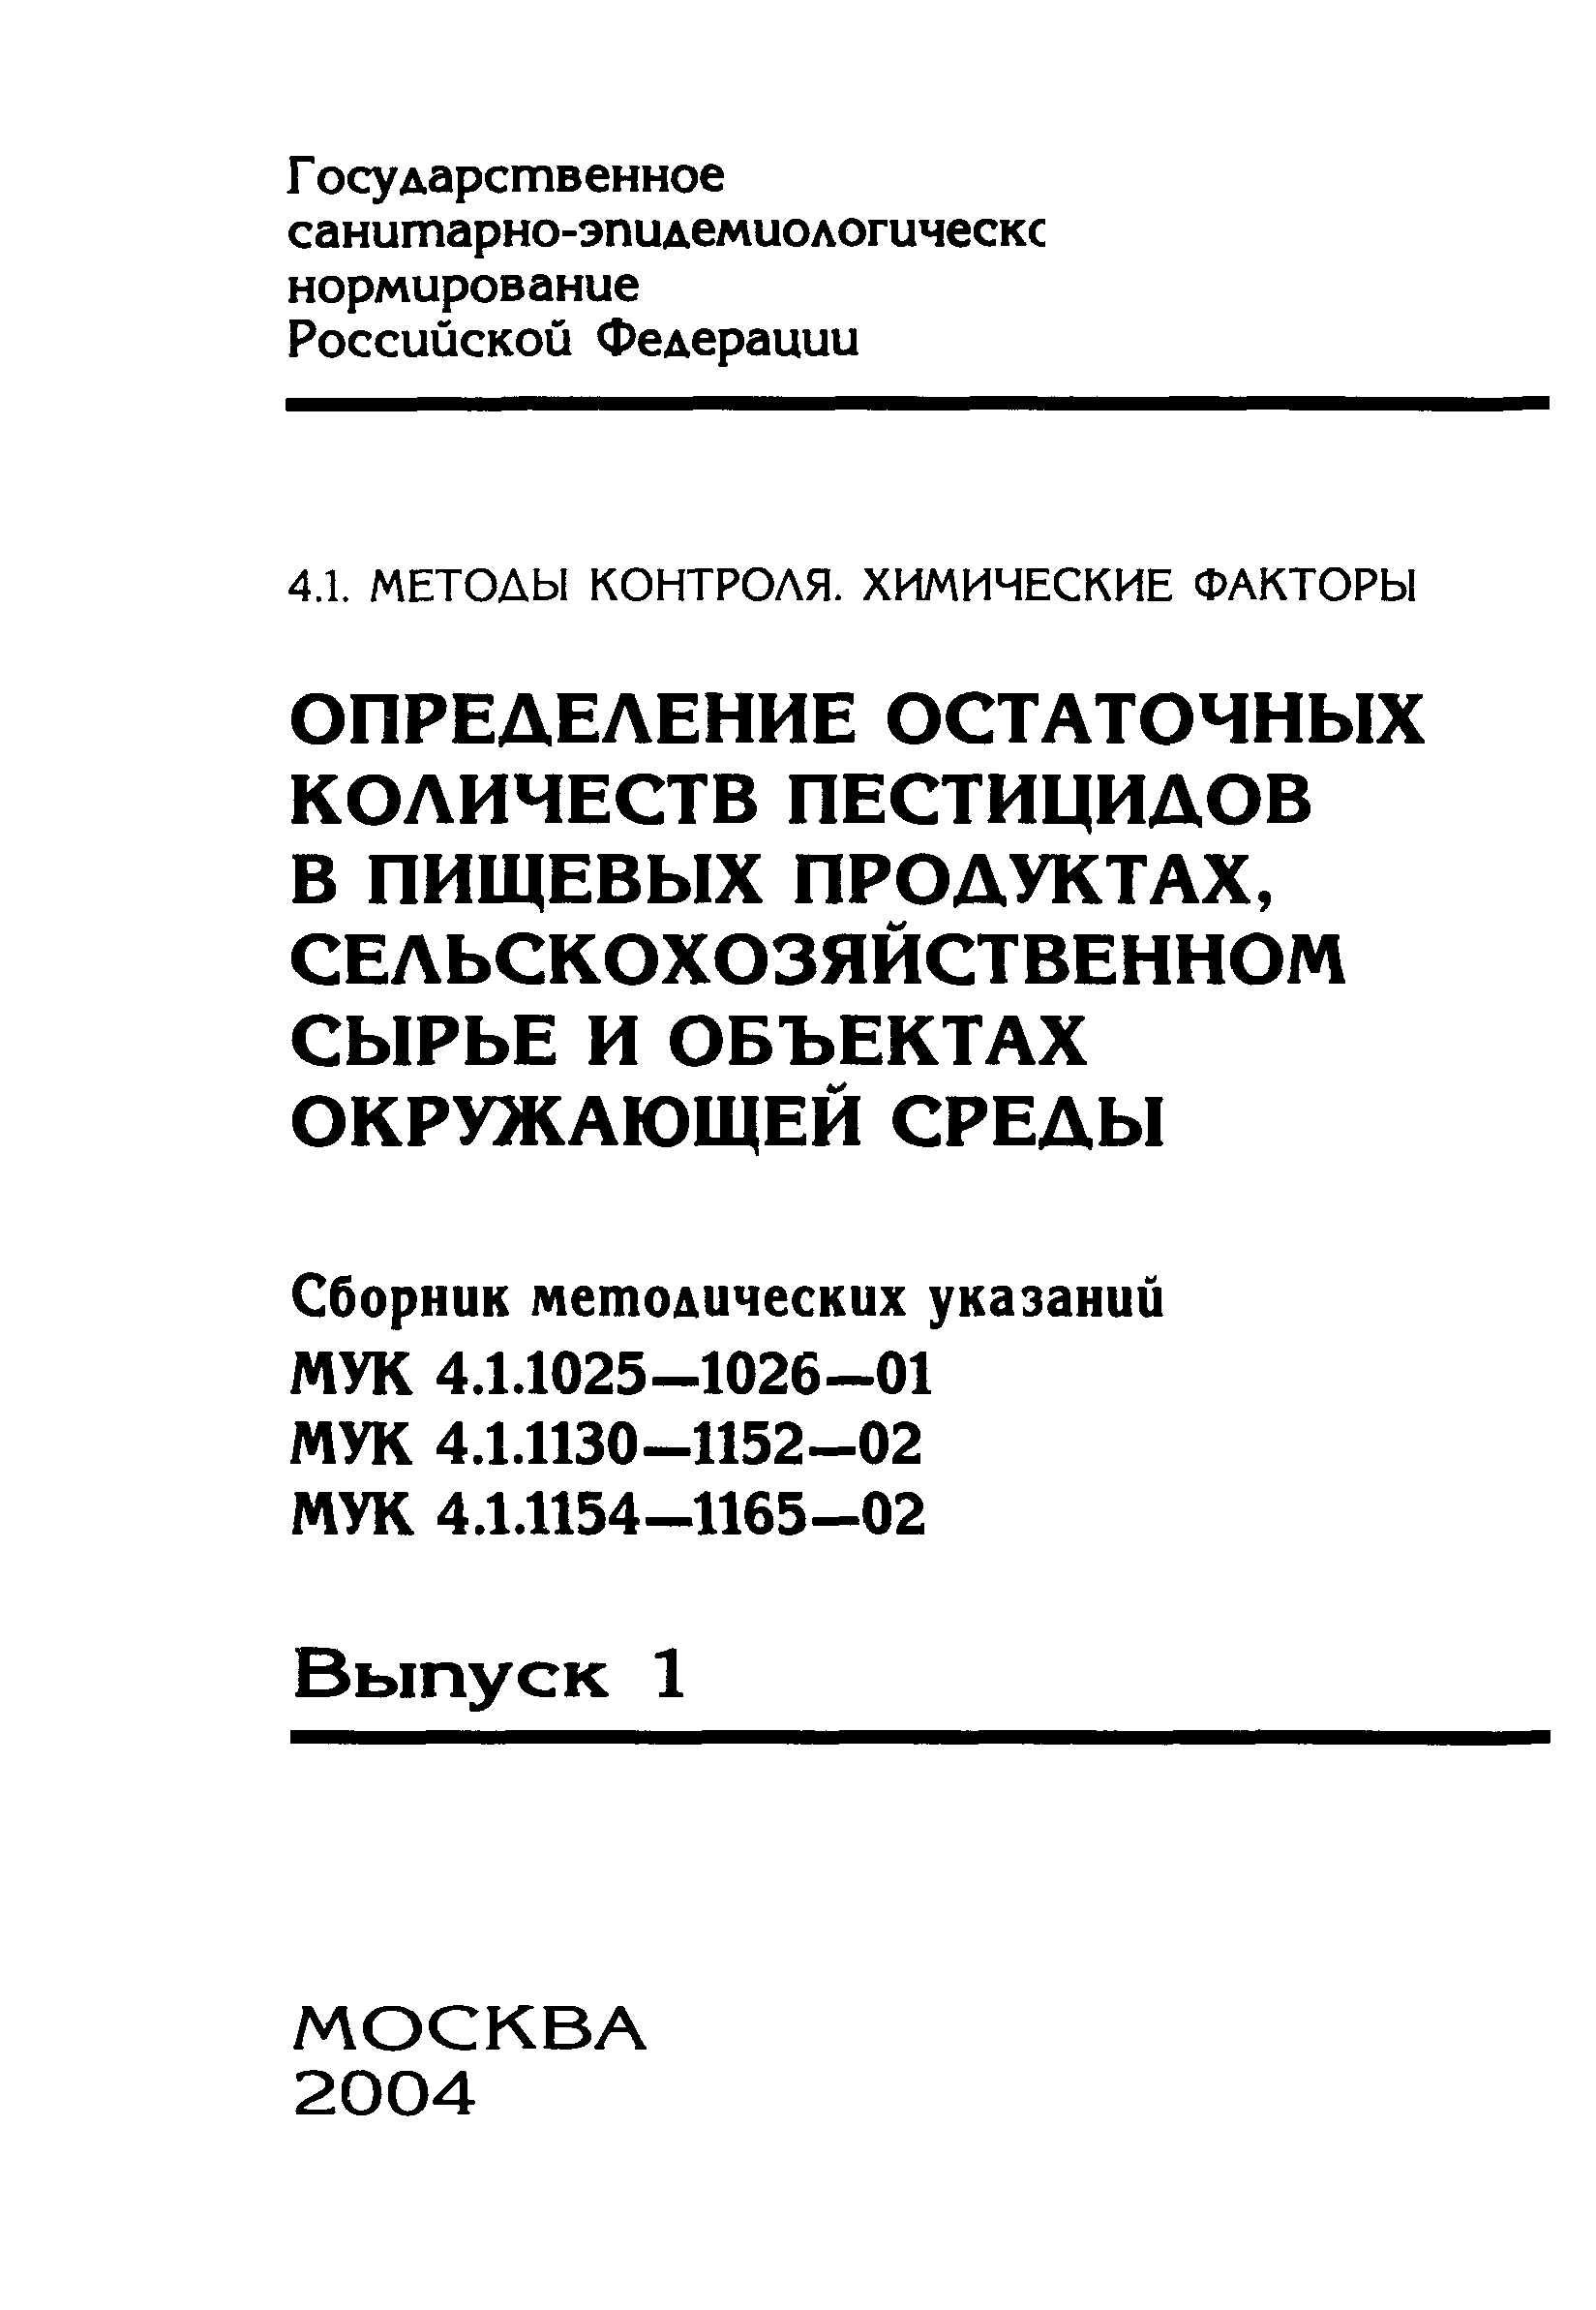 МУК 4.1.1138-02